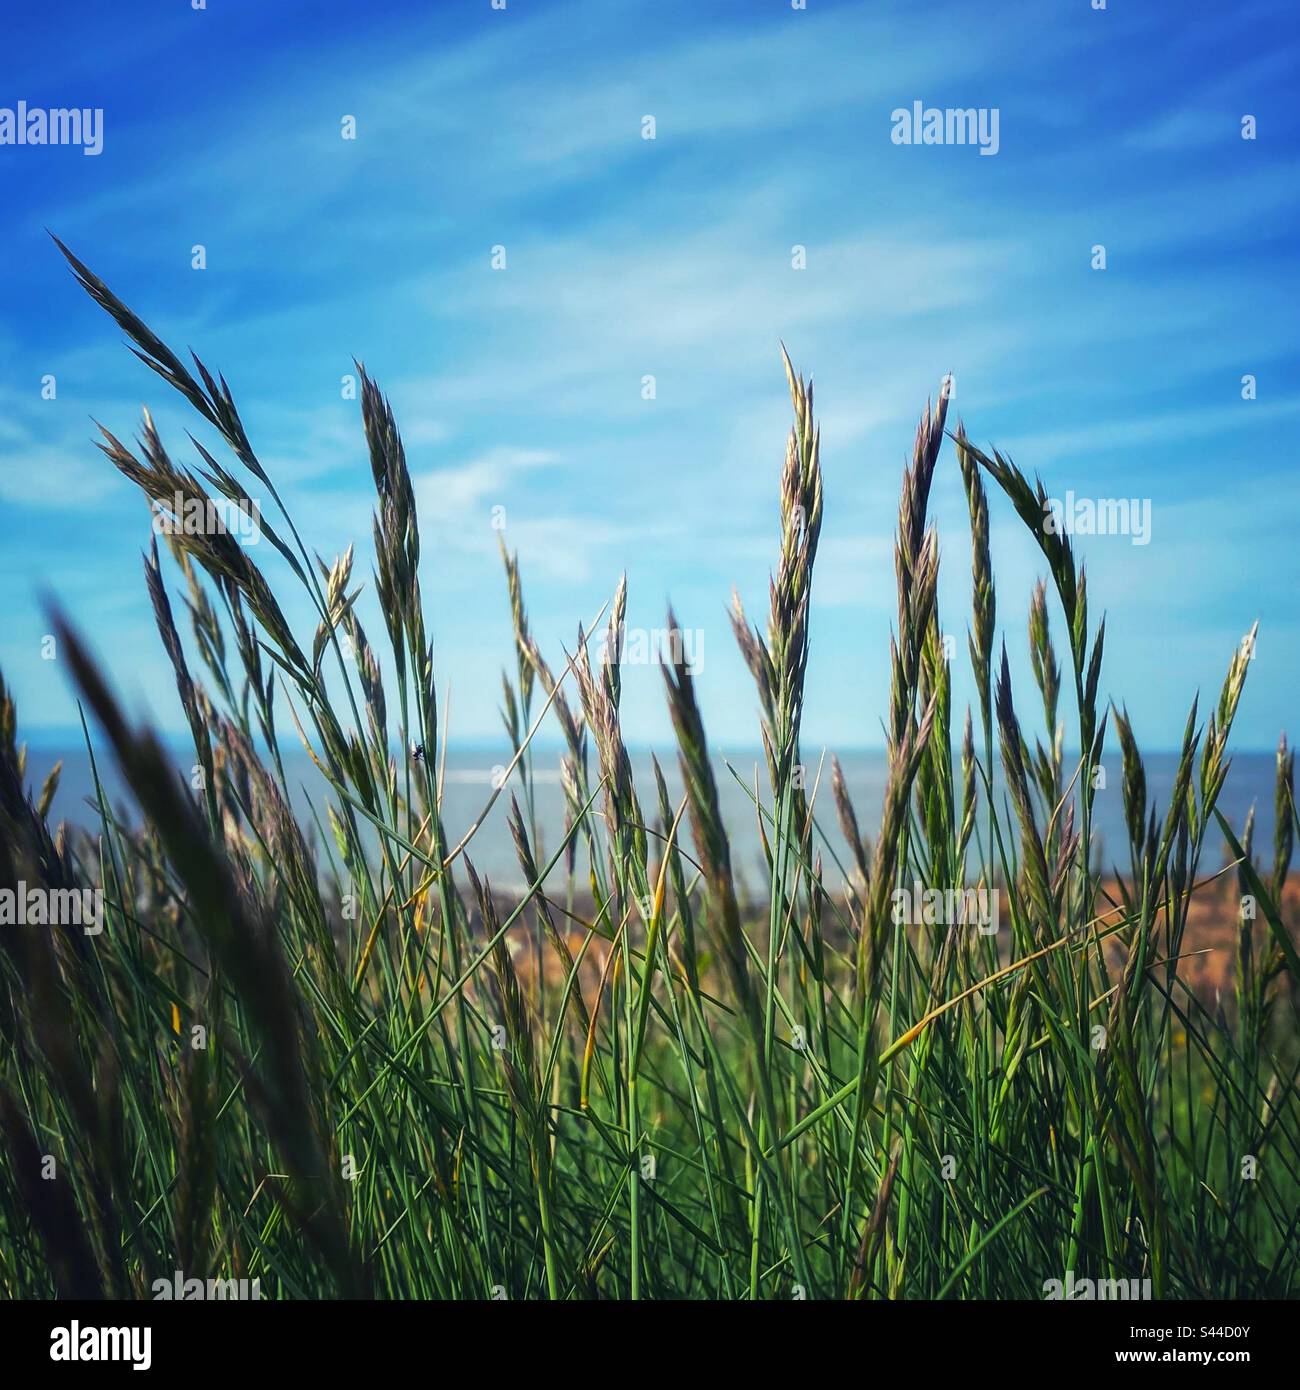 Una fotografia di erba alta sulla costa con l'oceano sullo sfondo. Profondità di campo bassa. Foto Stock